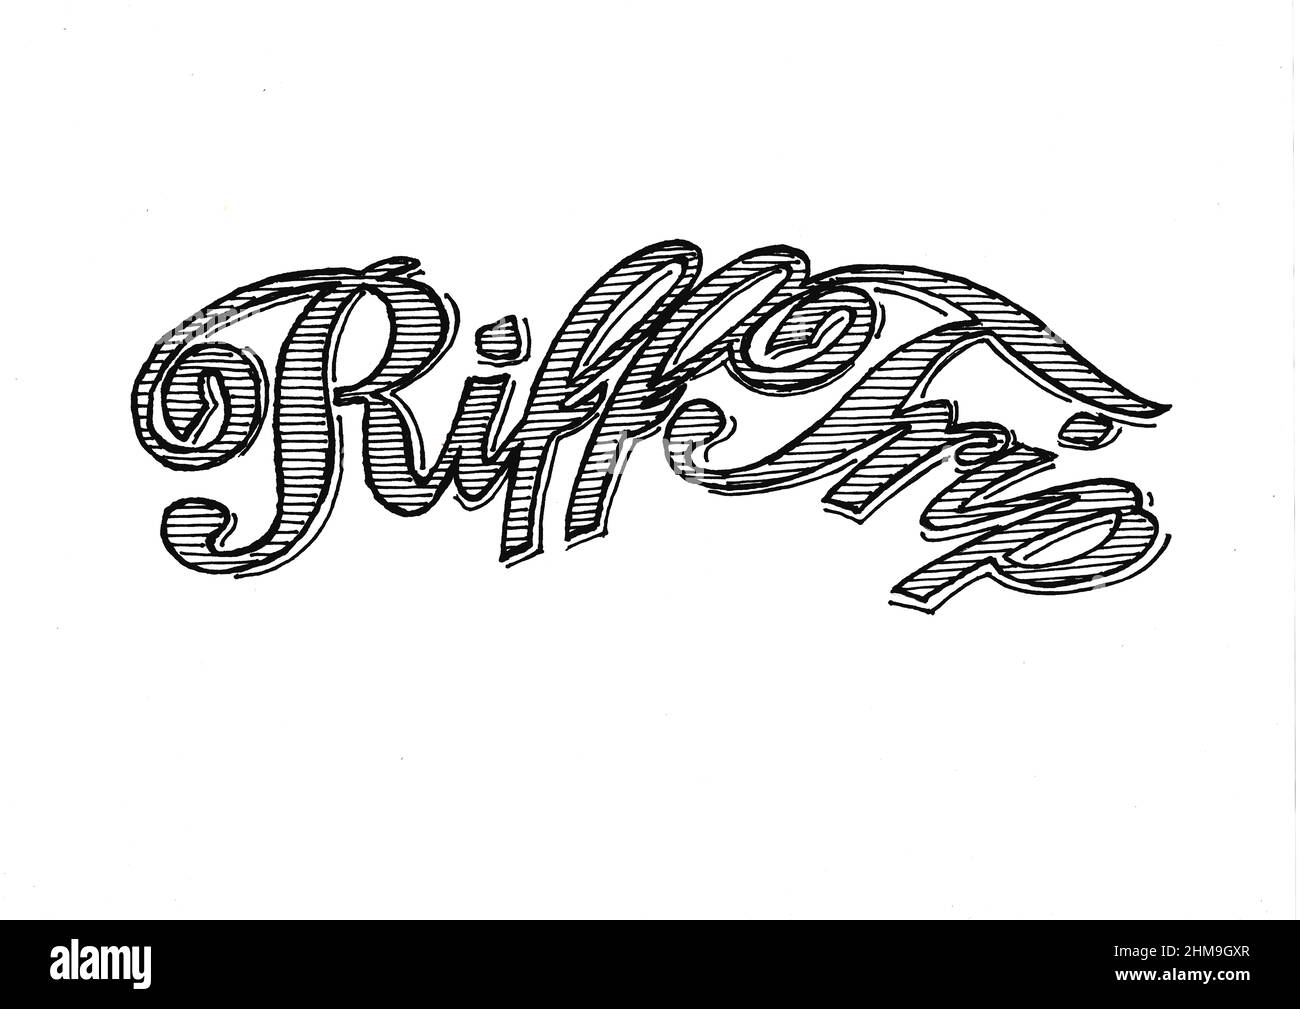 Riff Trip logo on a white background. Stock Photo